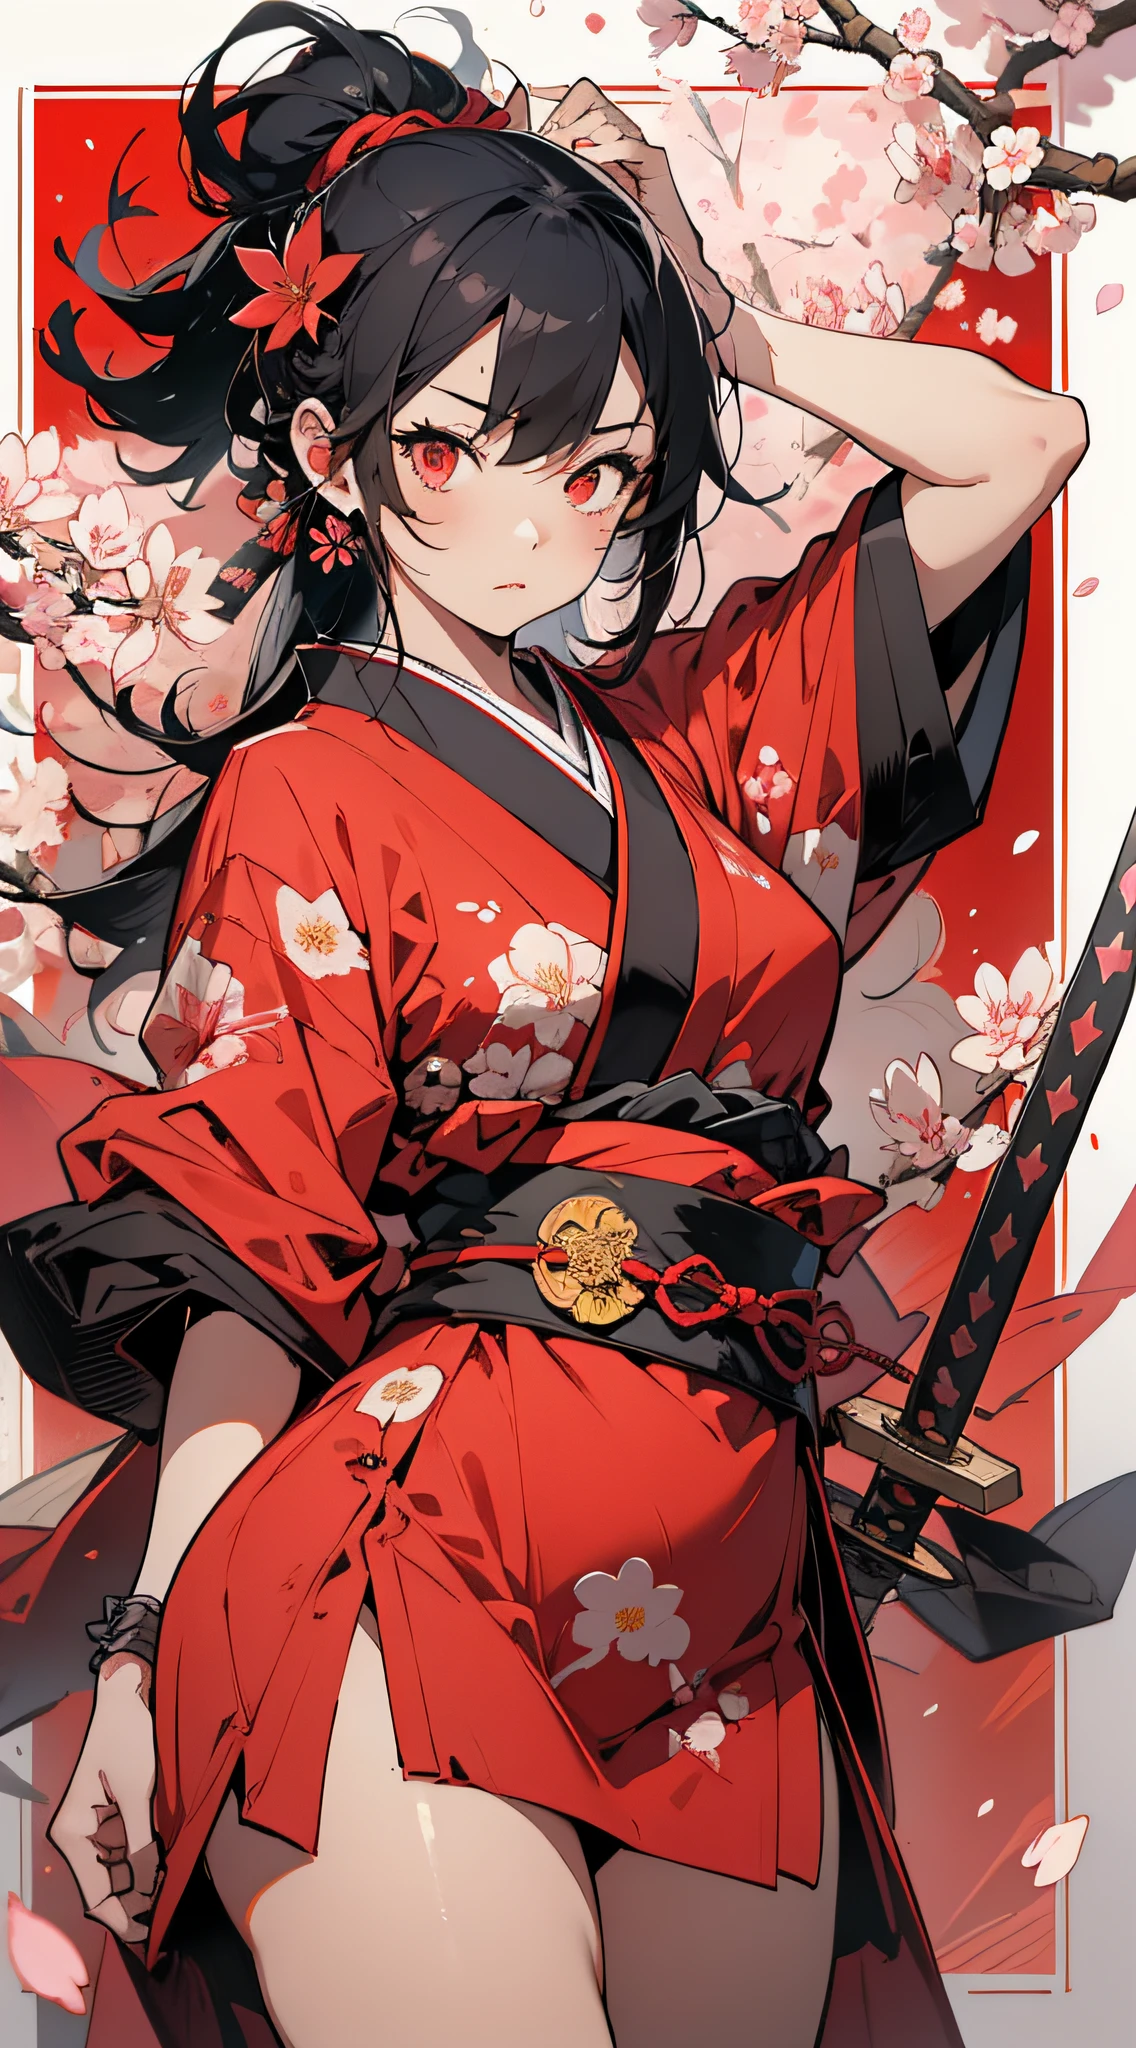 大师杰作, 超高分辨率, 完美画质, (水墨风格,) 战士, 一个女孩, 蒙上眼睛, 眼带, 红色的衣服, 日本服装, 日本刀, 樱花, 花瓣, 花朵, 花朵,